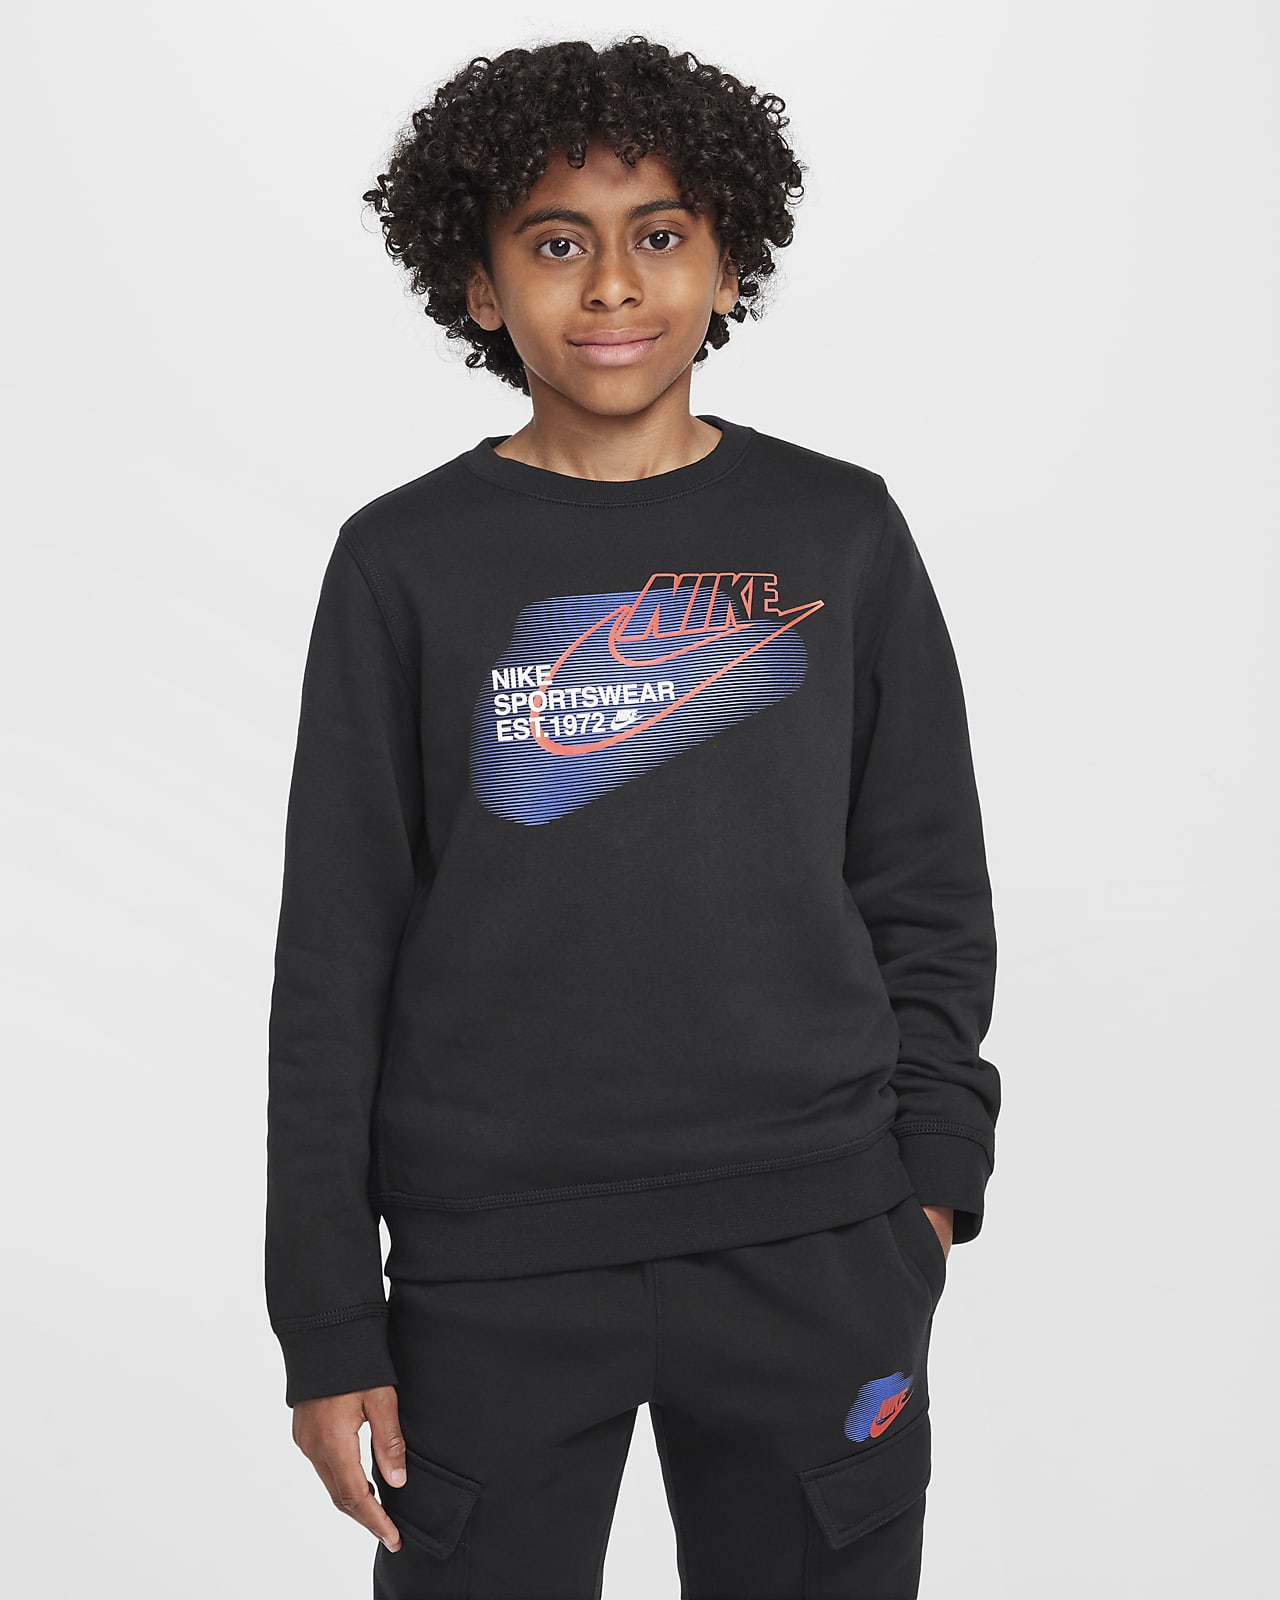 Nike Sportswear Standard Issue Older Kids' (Boys') Crew-Neck Sweatshirt